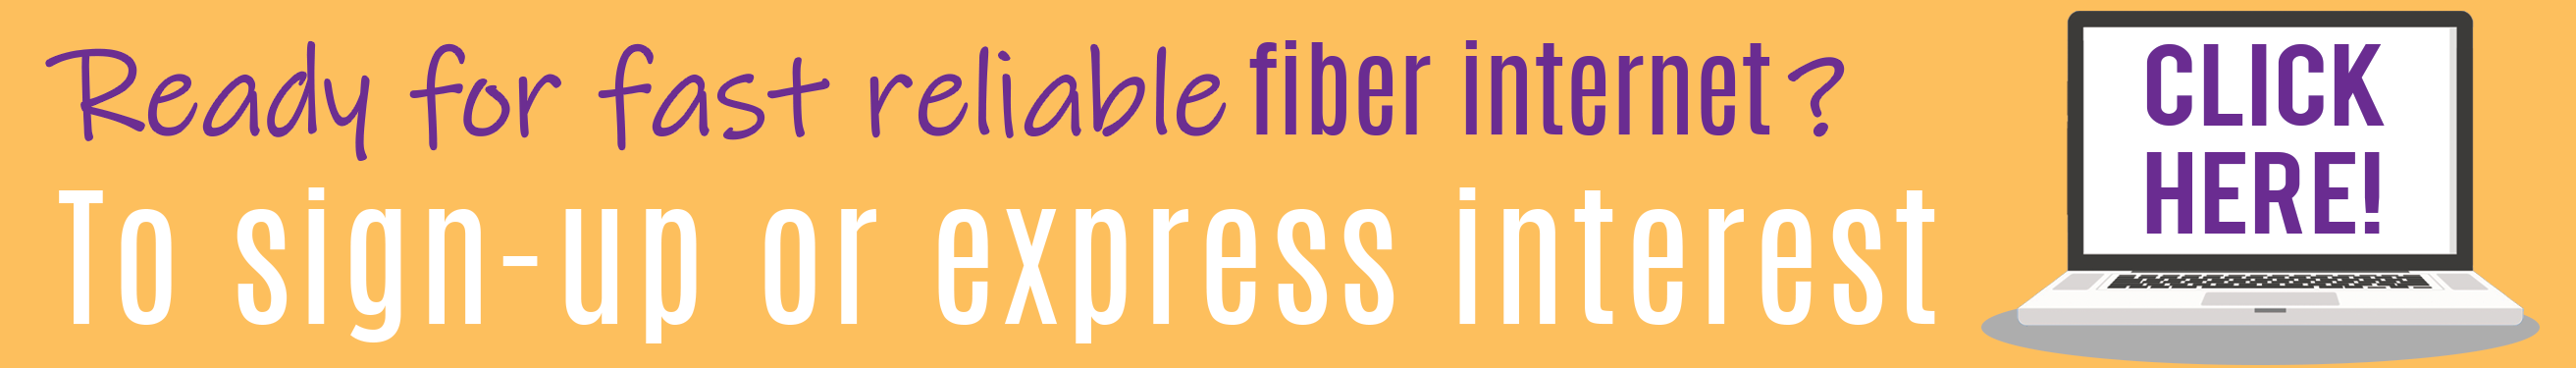 Show interest or Sign-up for fiber